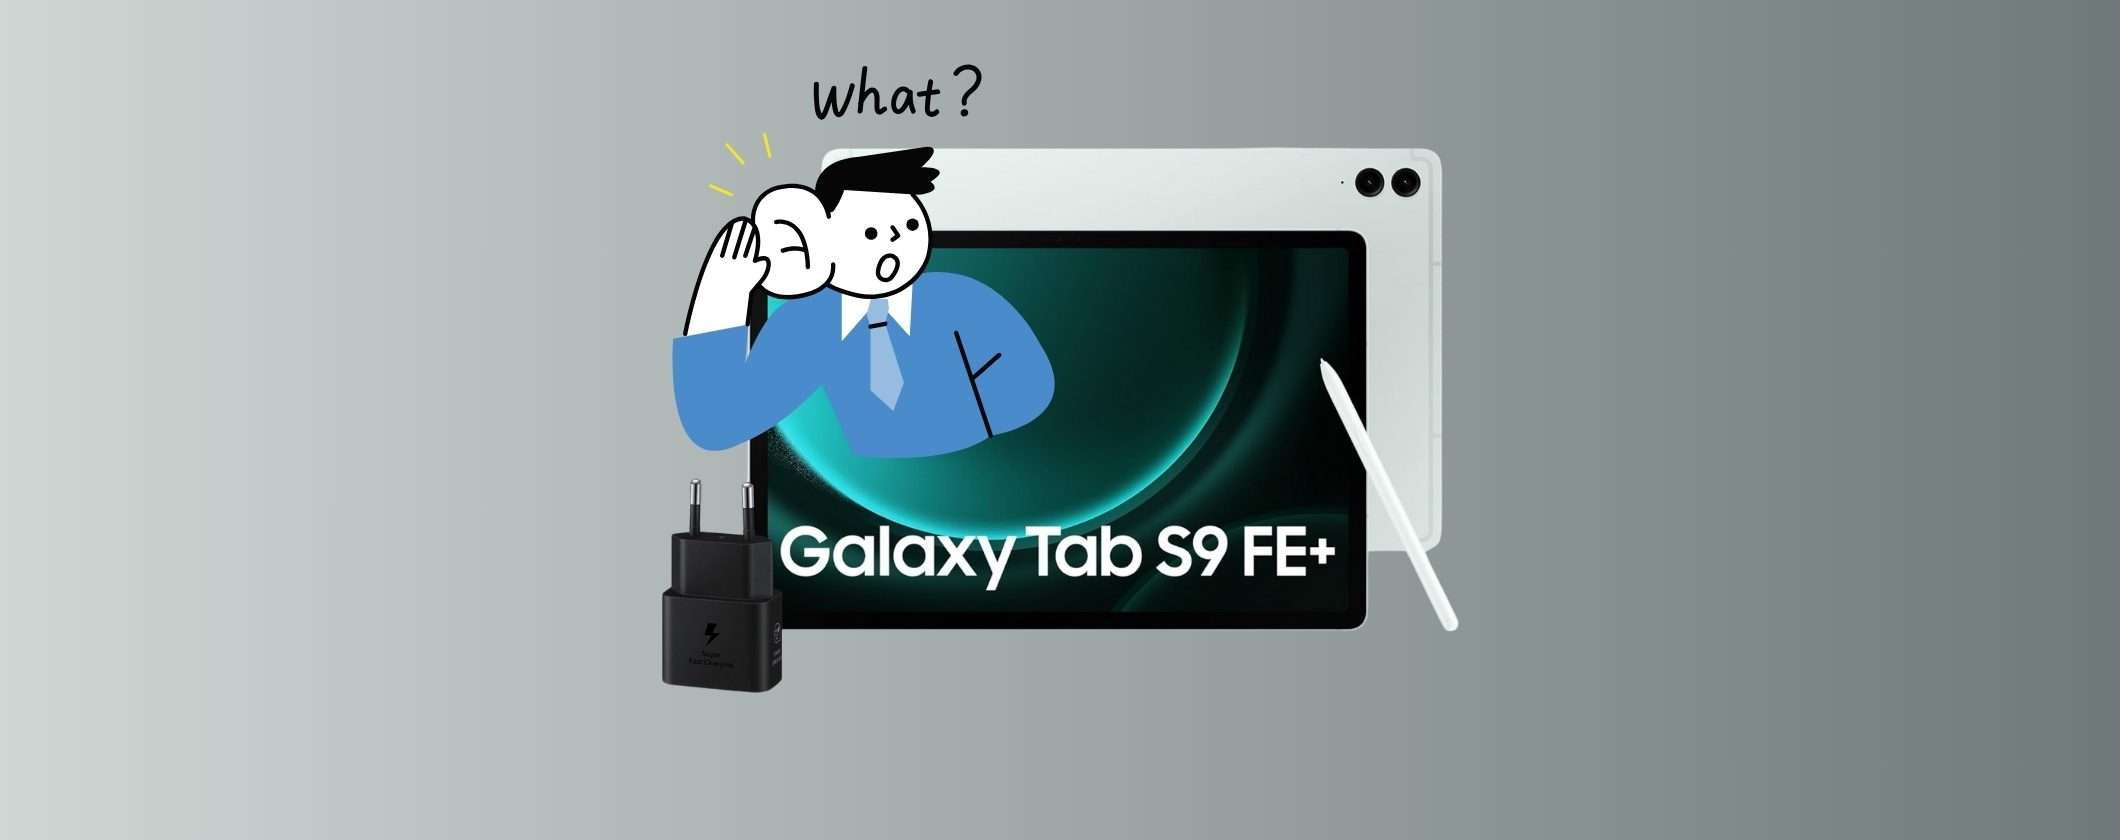 Samsung Galaxy Tab S9 FE+: l'economico ha ora 12 pollici ed è in PROMO